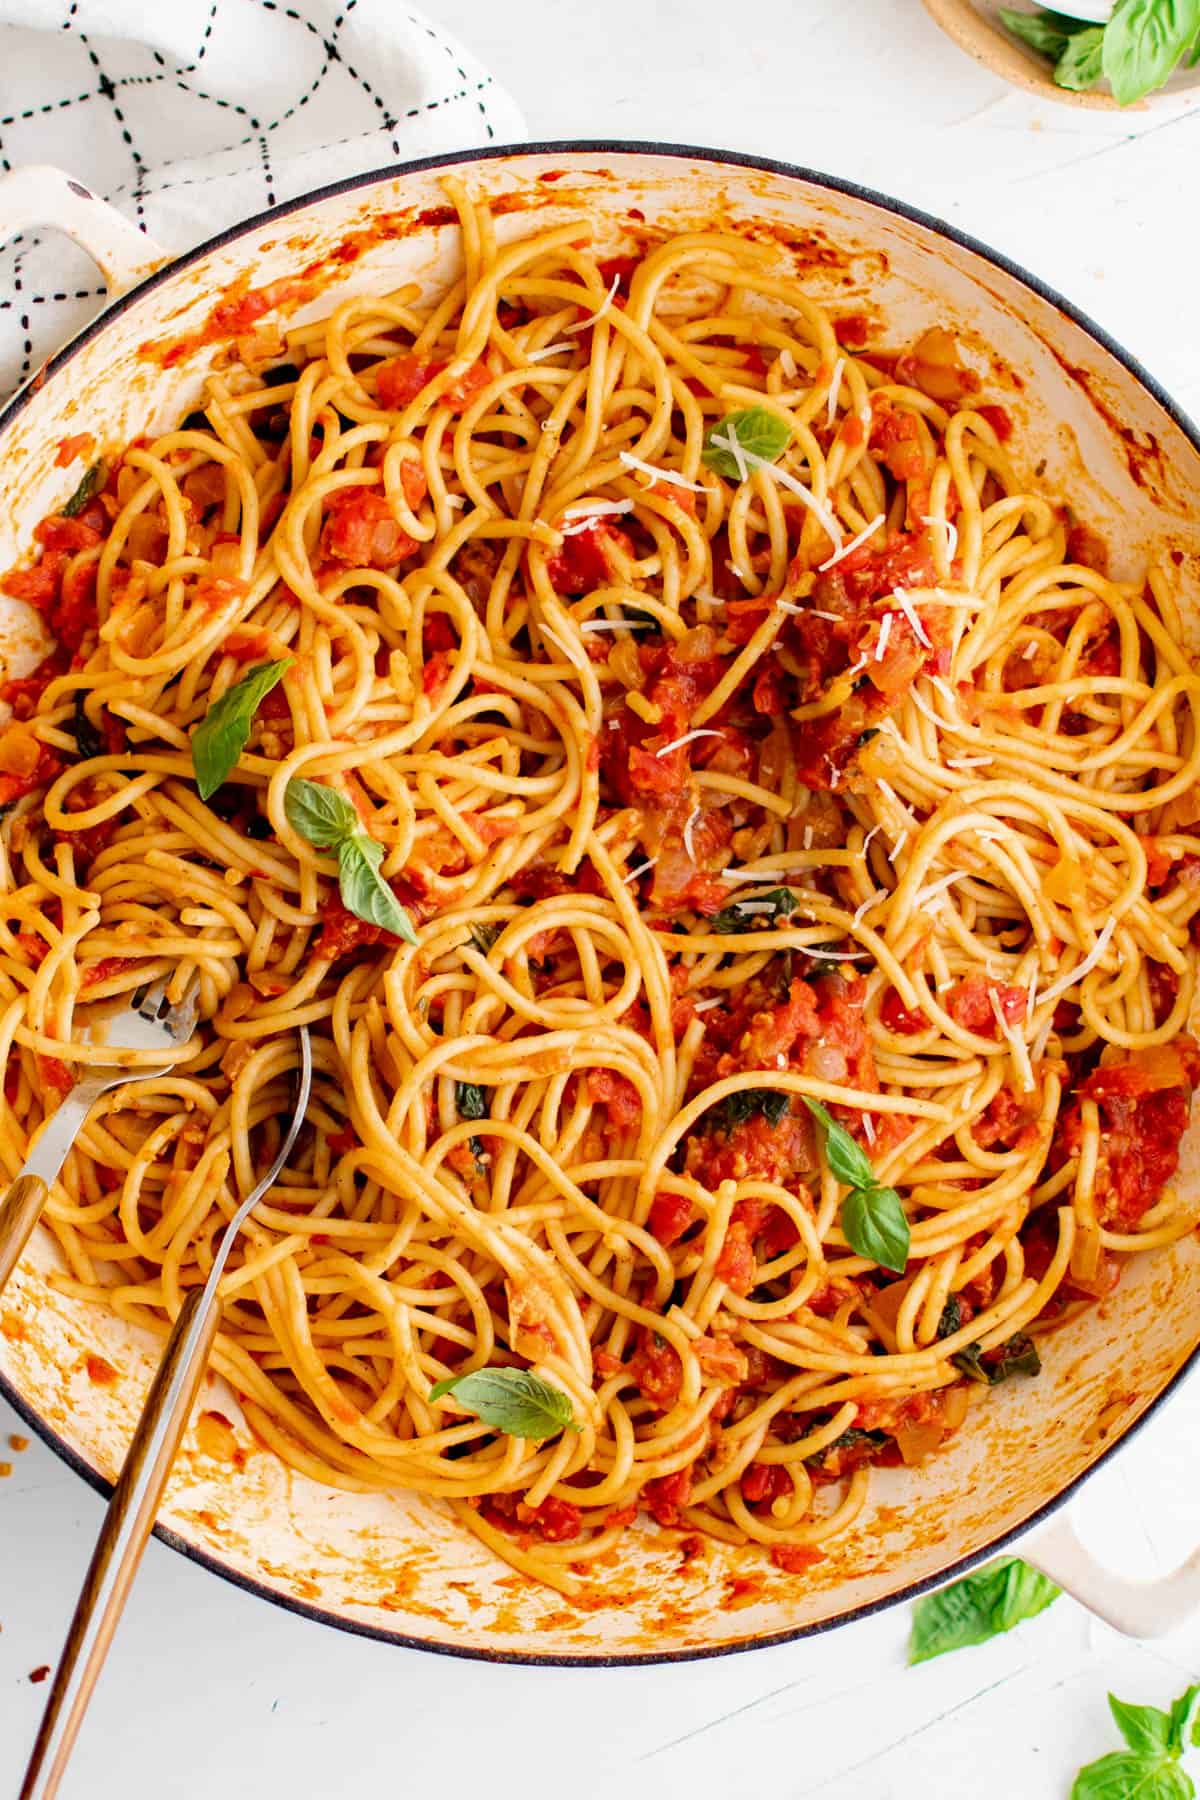 Une poêle remplie de spaghetti arrabbiata cuits et garnis de basilic haché.